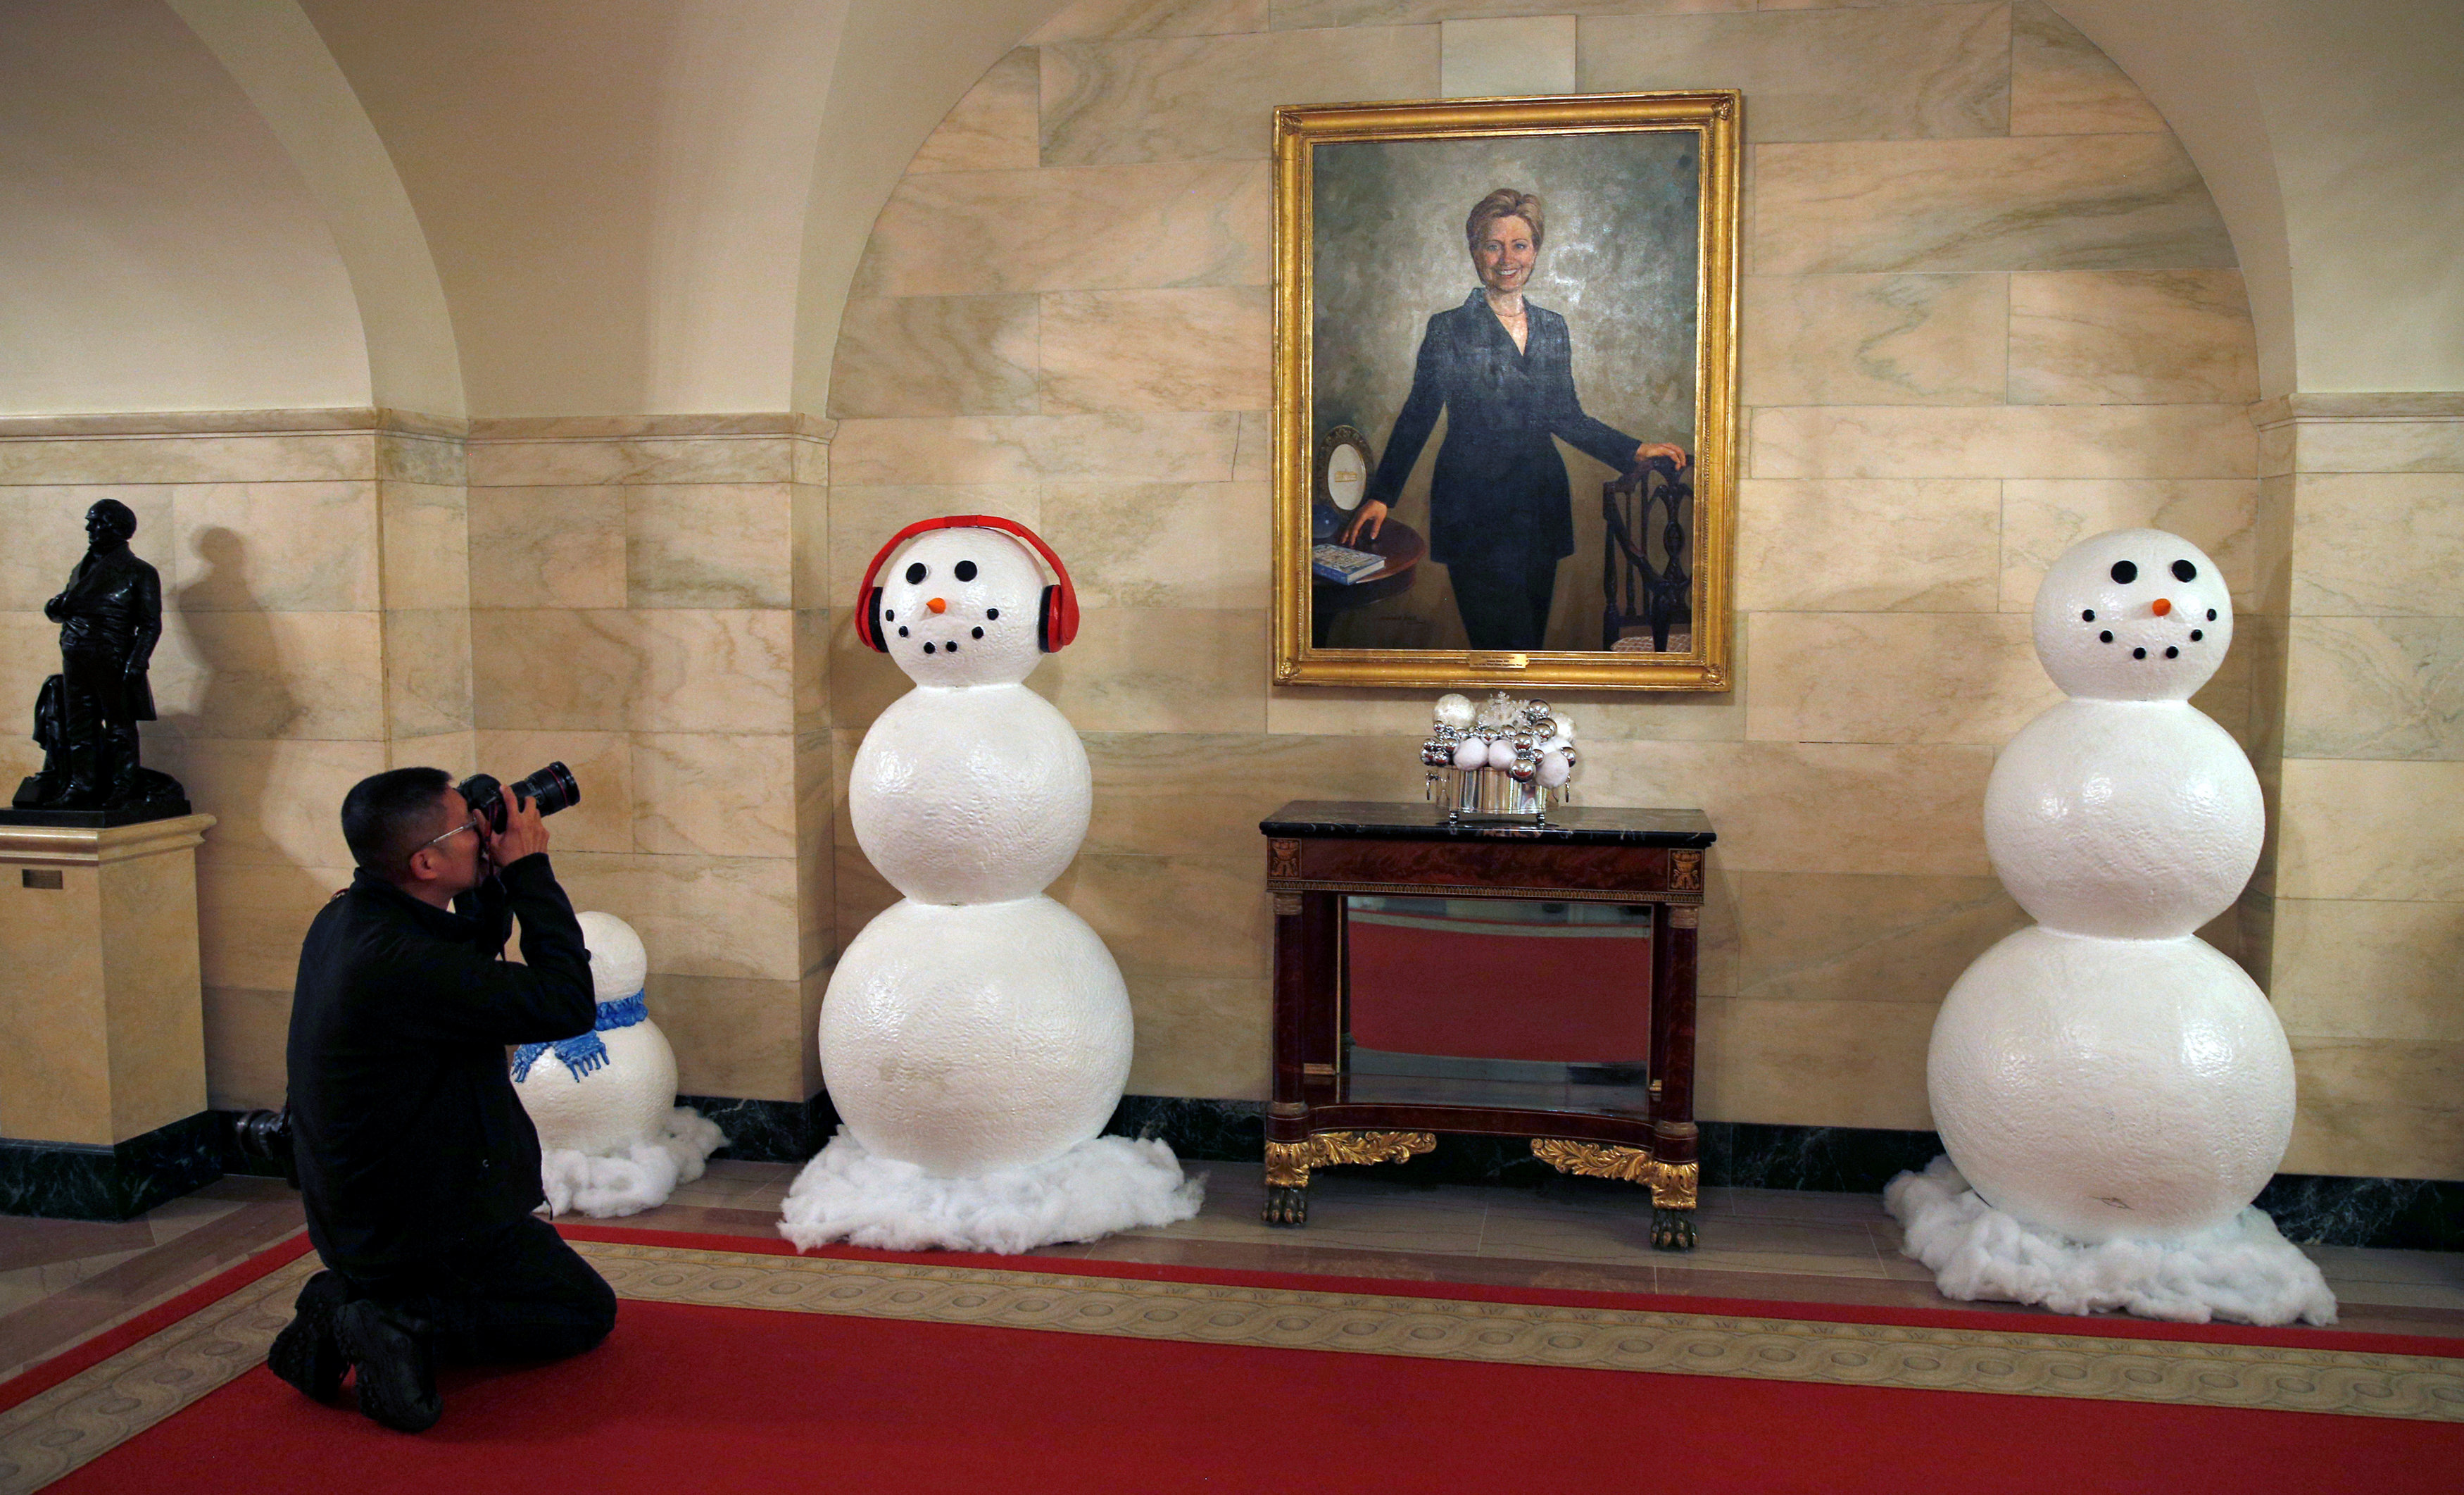 去年放置在戶外的雪人造型玩偶，今年再度於室內走廊出現。墙上挂着的是美国前第一夫人希拉莉的画像。-路透社-